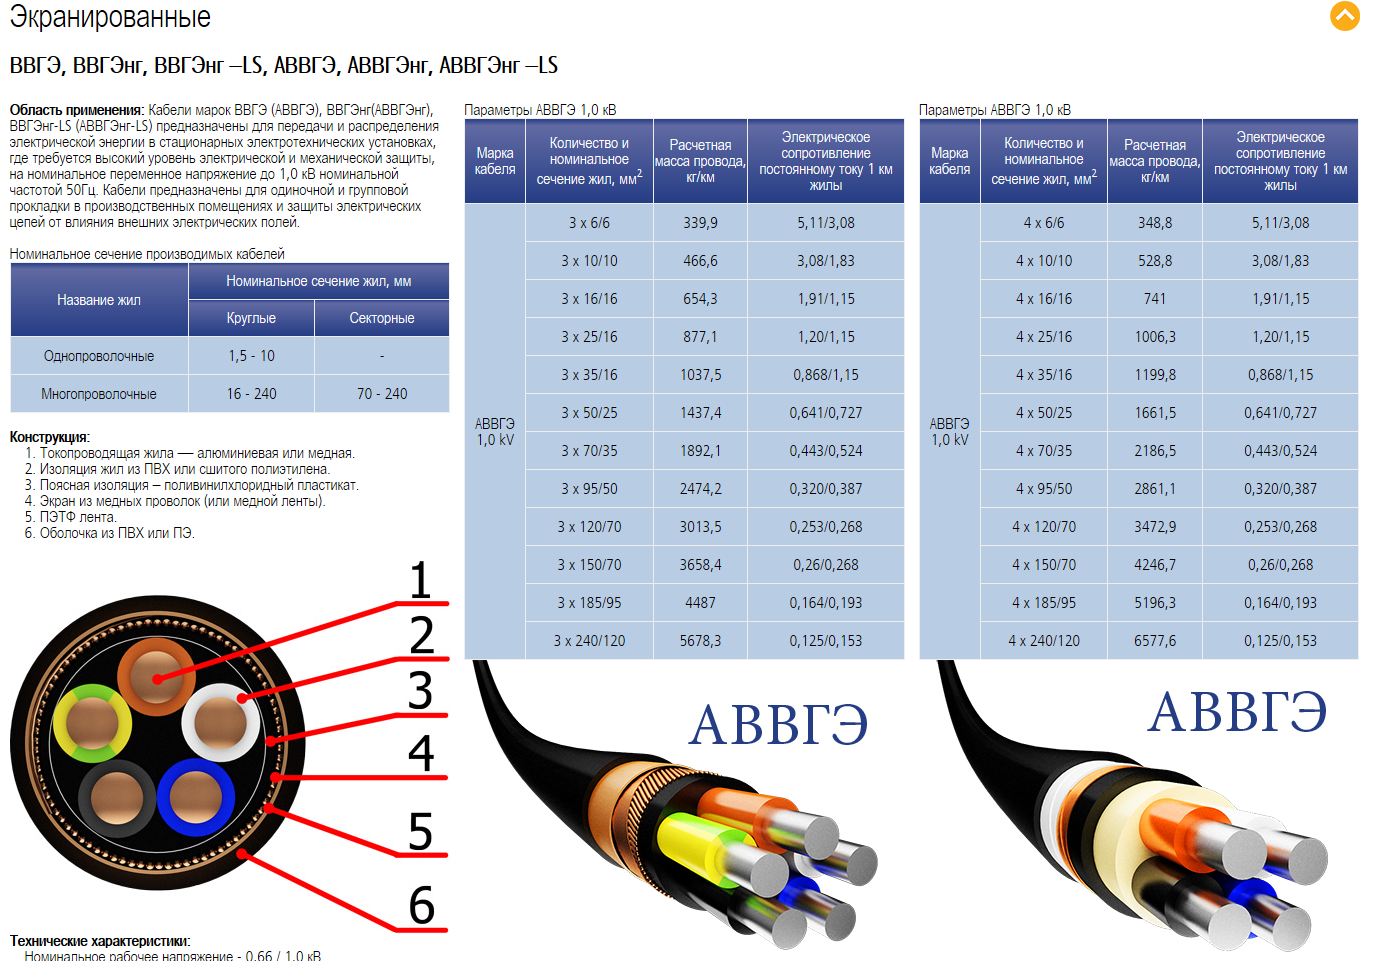 Описание и технические характеристики силового кабеля авббшв